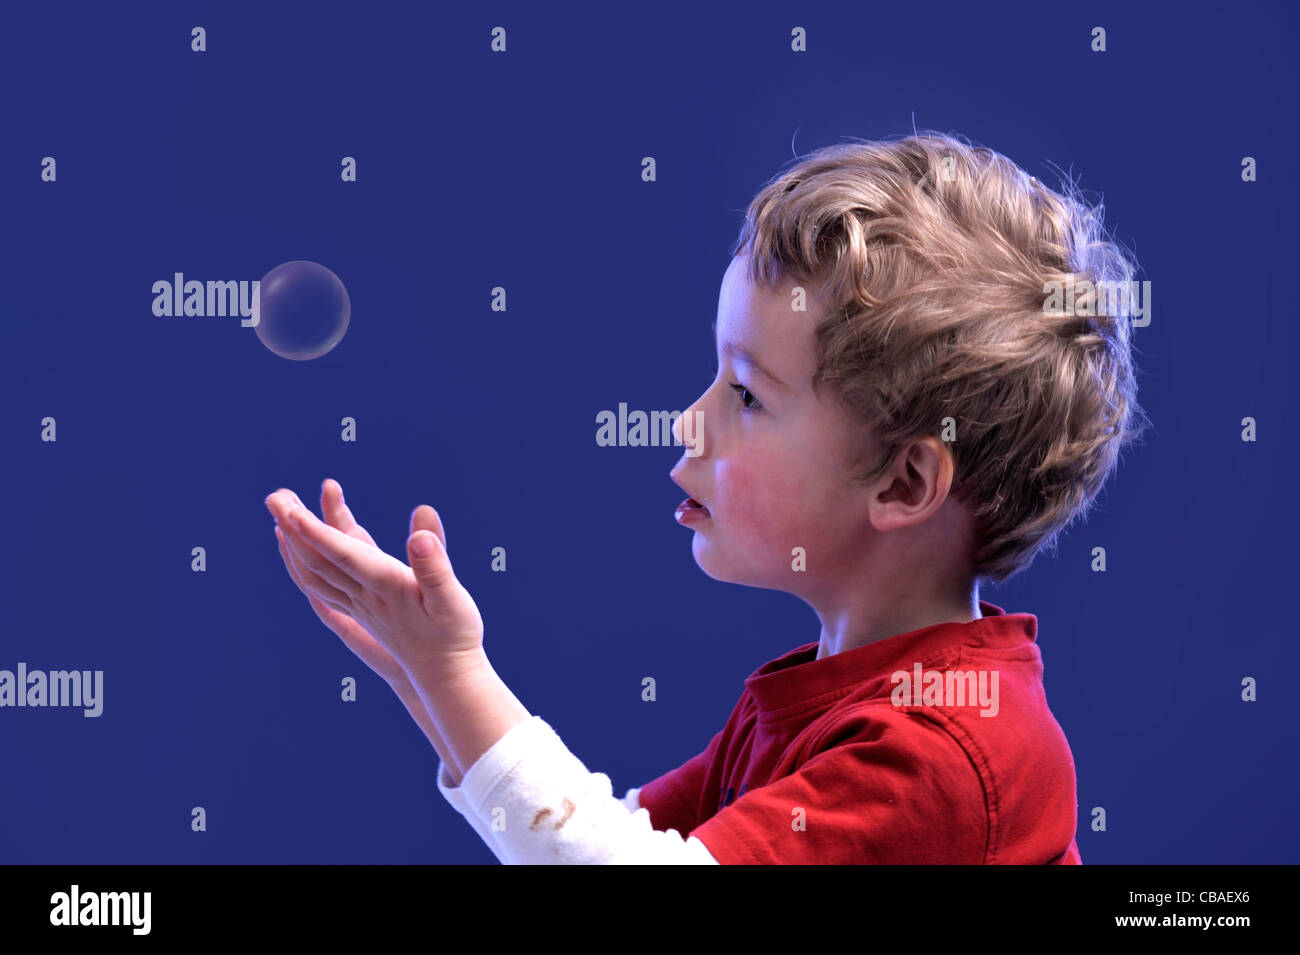 Niño jugando con una burbuja de aire Foto de stock